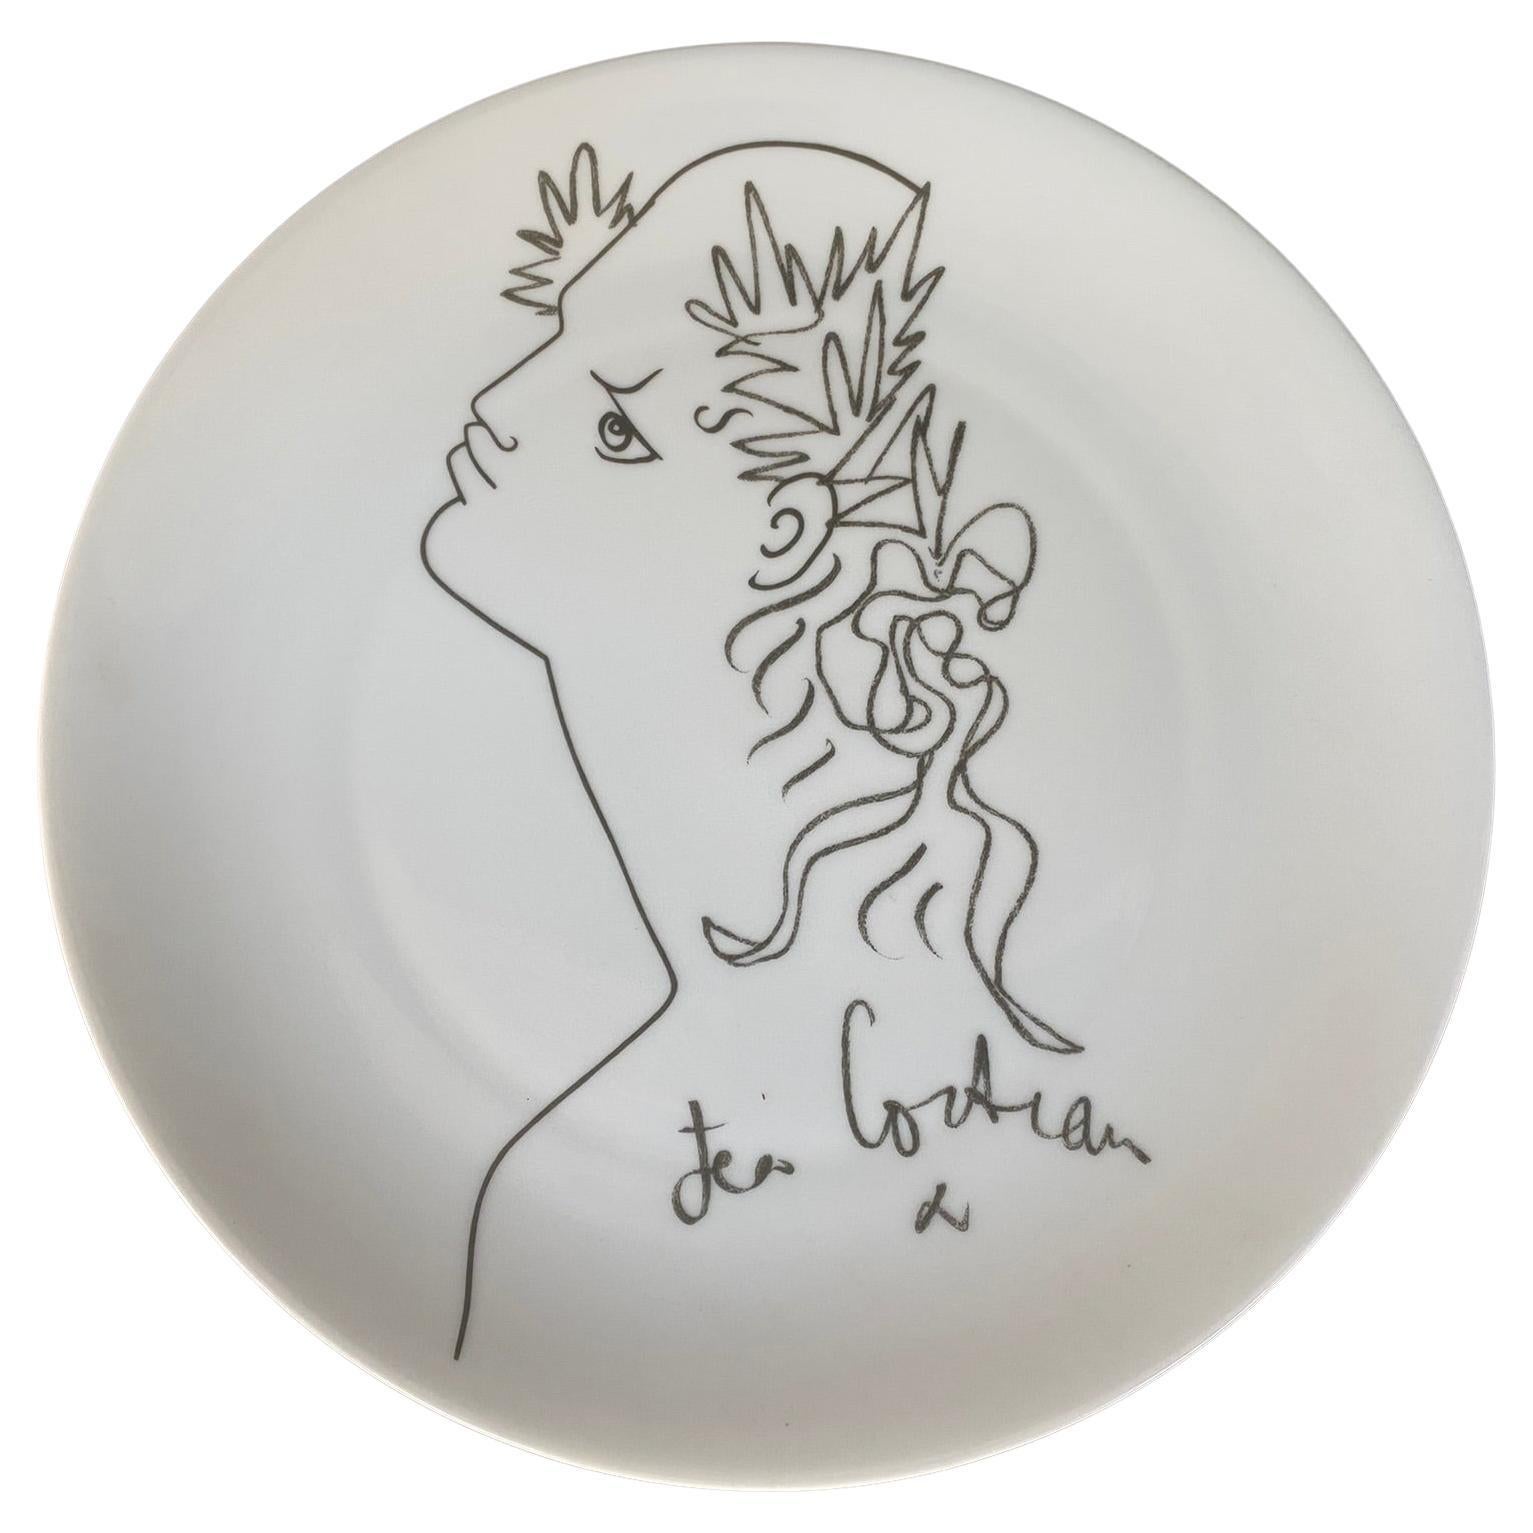 Cocteau Jean Limoges Porcelain Plate, Signed